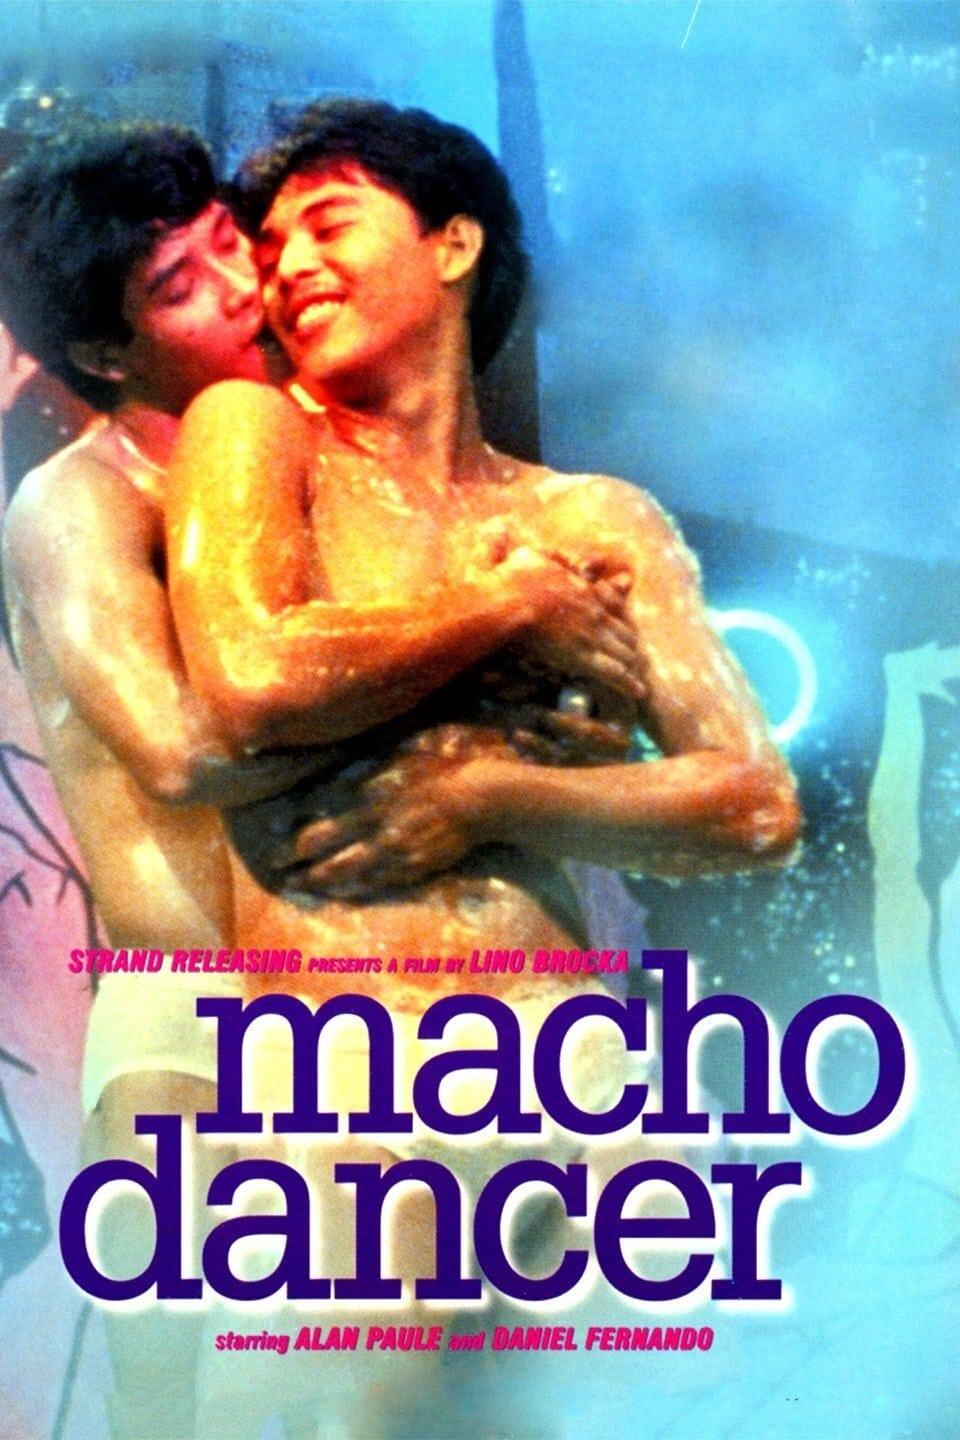 Macho Dancer poster